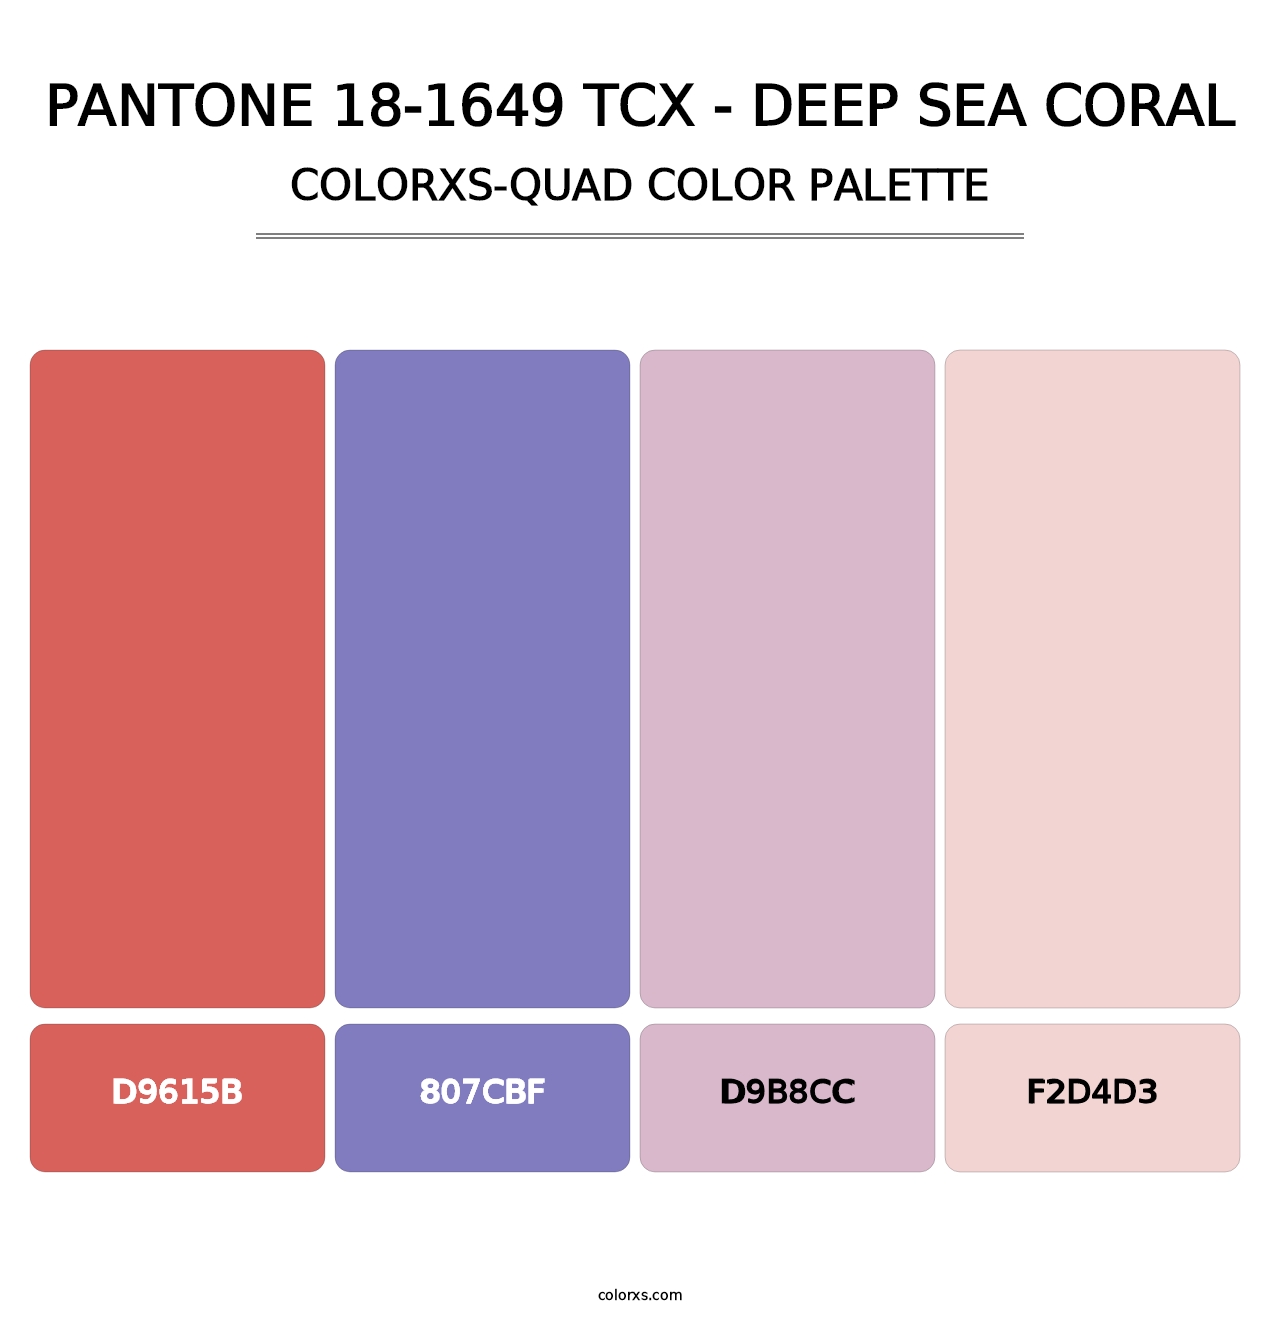 PANTONE 18-1649 TCX - Deep Sea Coral - Colorxs Quad Palette